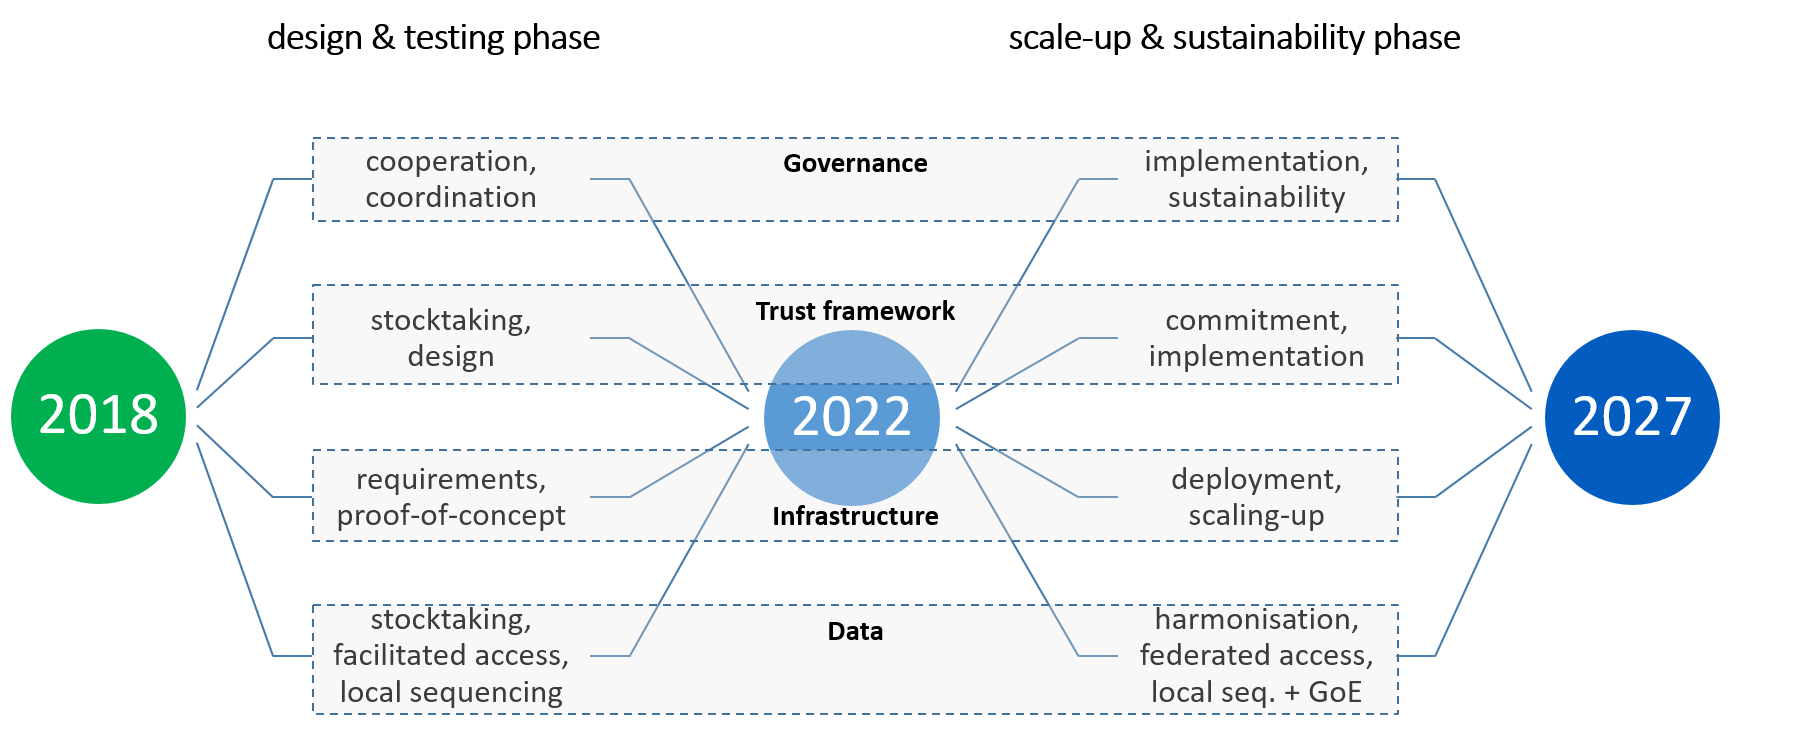 Изпълнение на декларацията от 1+MG и пътните карти за периода 2018—2027 г. Графикът е разделен на две основни фази: Проектиране & усилвател; Фаза на изпитване: Тази фаза се осъществява от 2018 г. до 2022 г. Scale-Up & Фаза на устойчивост: Този етап обхваща периода 2022—2027 г. Основните приоритетни области са подчертани и включват: Управление: По време на фазата на проектиране и изпитване се поставя акцент върху сътрудничеството и координацията. Във фазата на разрастване и устойчивост акцентът се измества към изпълнението и устойчивостта. Рамка за доверие: Първоначално се извършва преглед и проектиране, свързани с рамката за доверие. По-късно има етап на поемане на ангажименти и изпълнение. Инфраструктура: В ранните етапи се разглеждат изискванията и доказването на концепцията. С напредването на проекта внедряването и разрастването стават от решаващо значение. Данни: Първоначално се прави преглед, улеснява се достъпът и се извършва секвениране на местно равнище. По-късно в играта влизат хармонизацията, федерираният достъп и локалната последователност с глобална перспектива. 2018 г., 2022 г. и 2027 г. са посочени в графика.